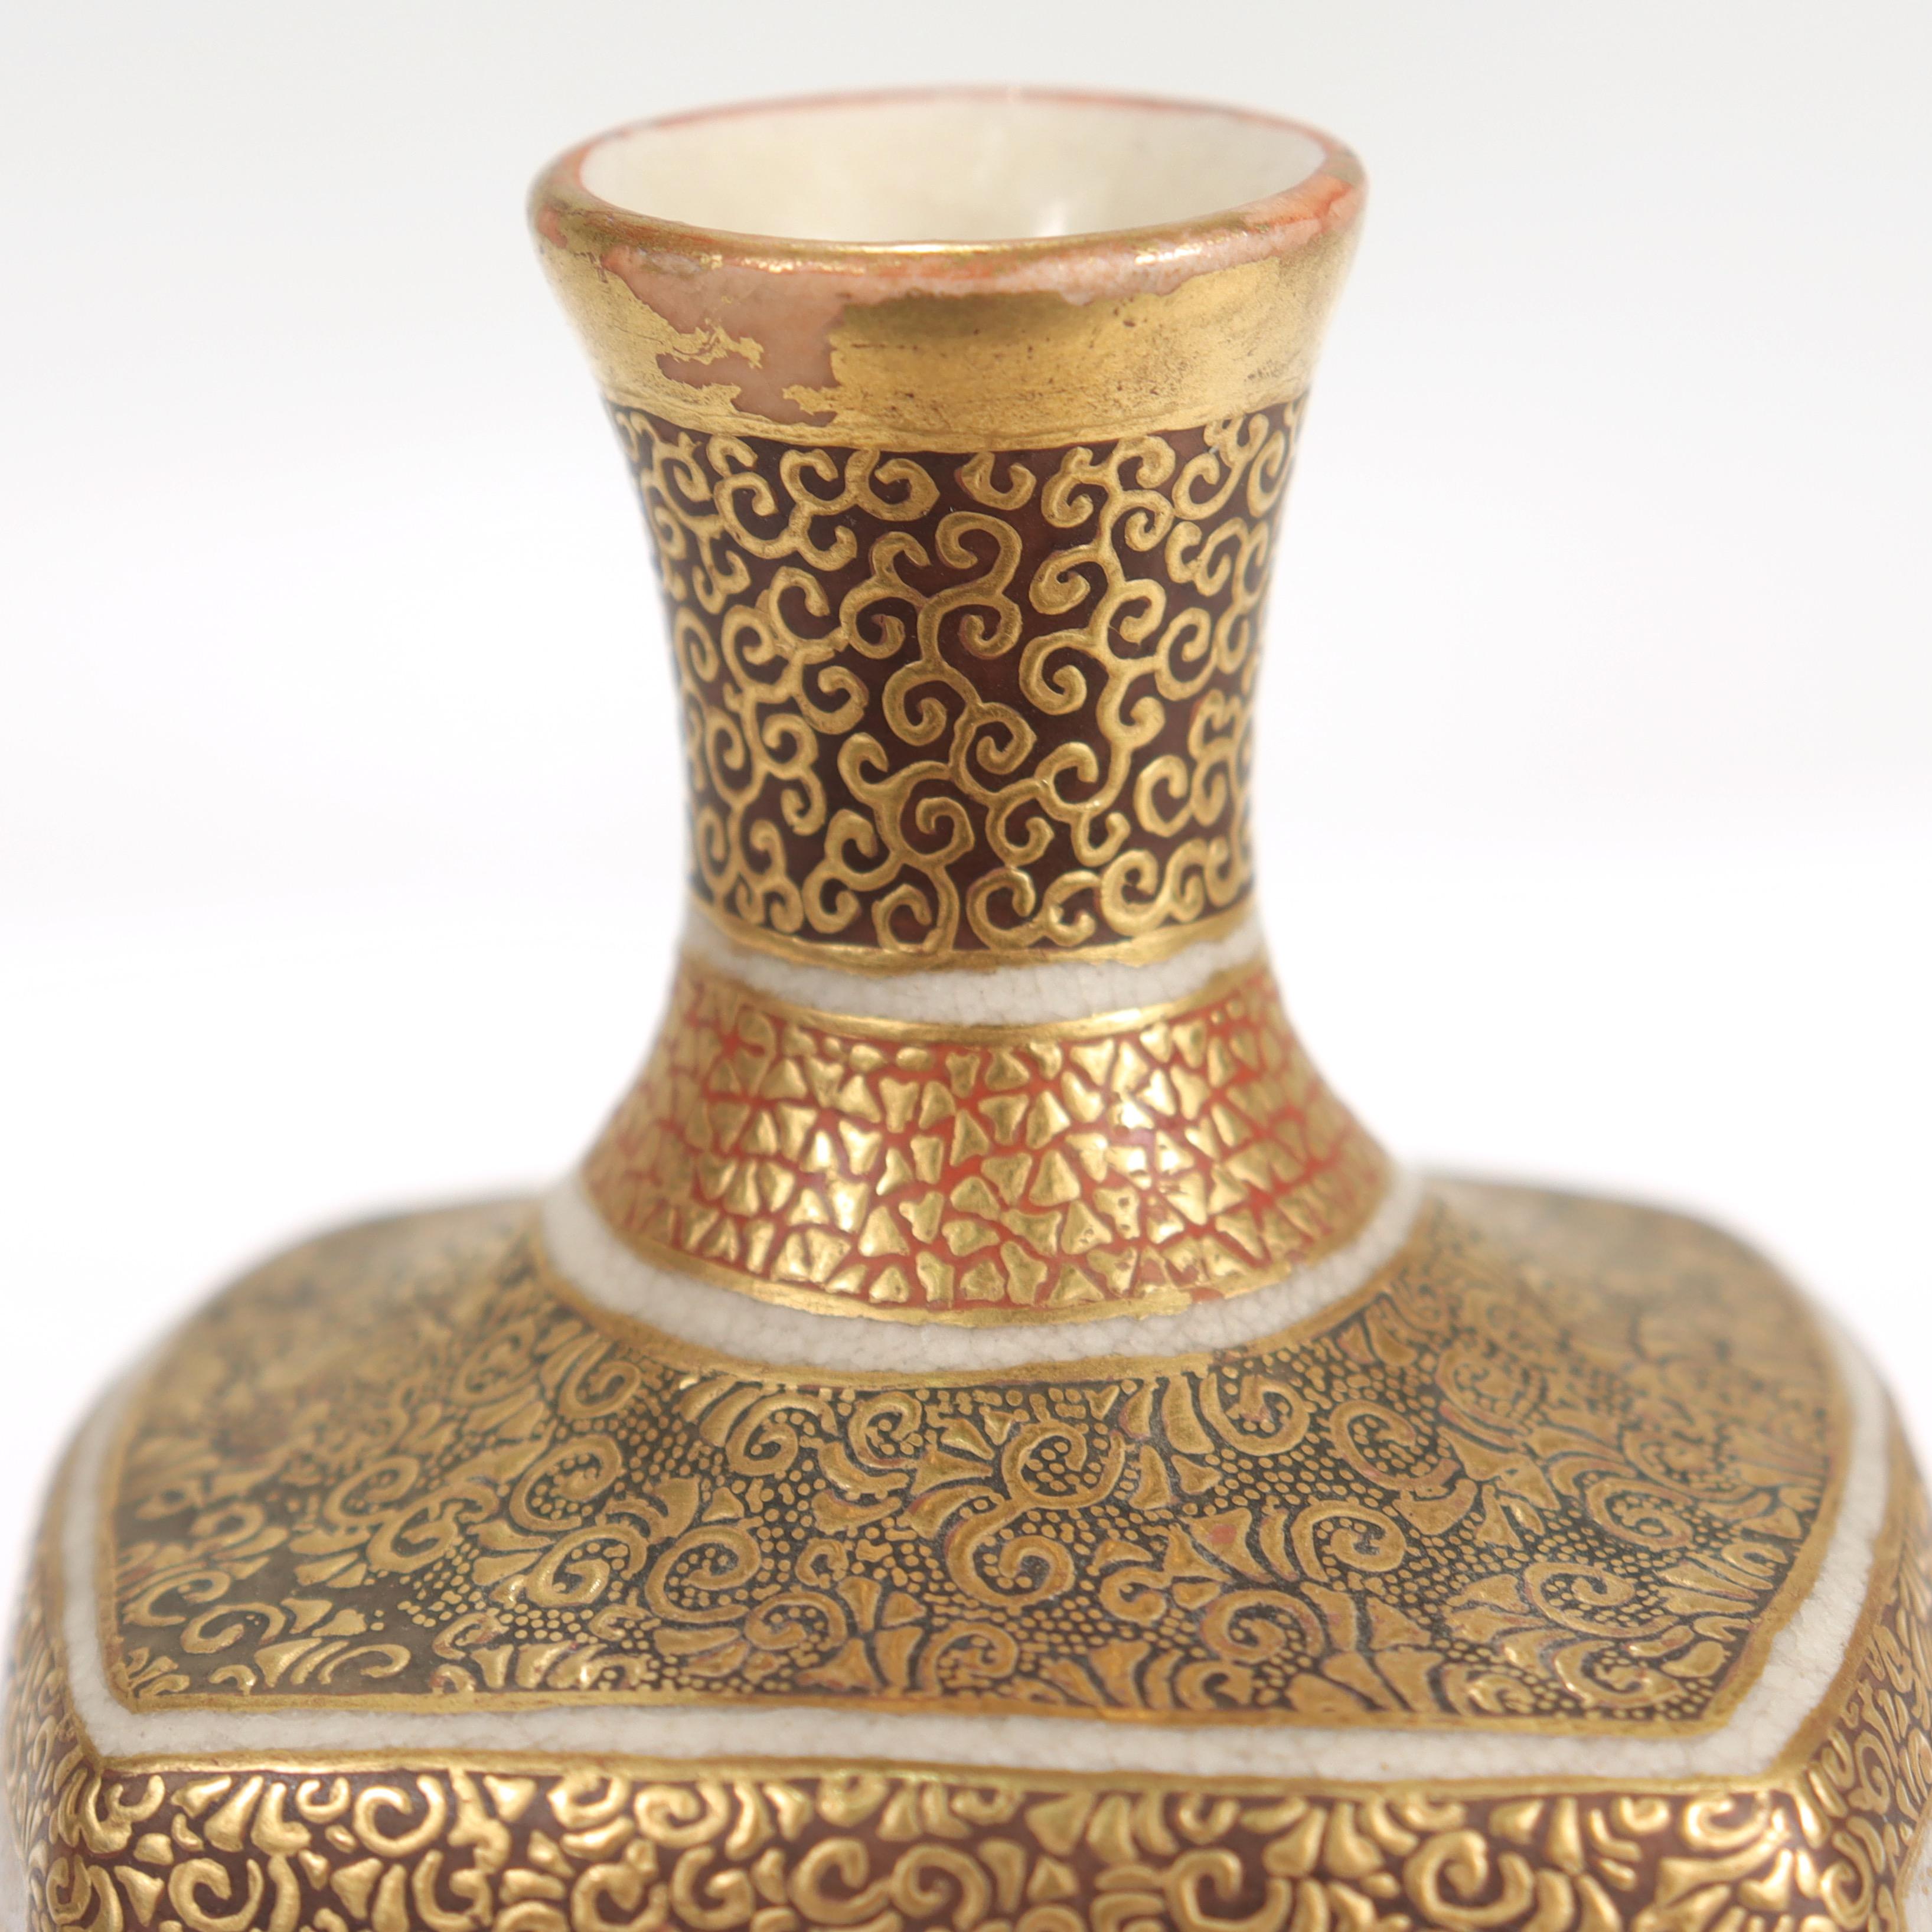 Antique Japanese Satsuma Pottery Miniature Cabinet Vase 9